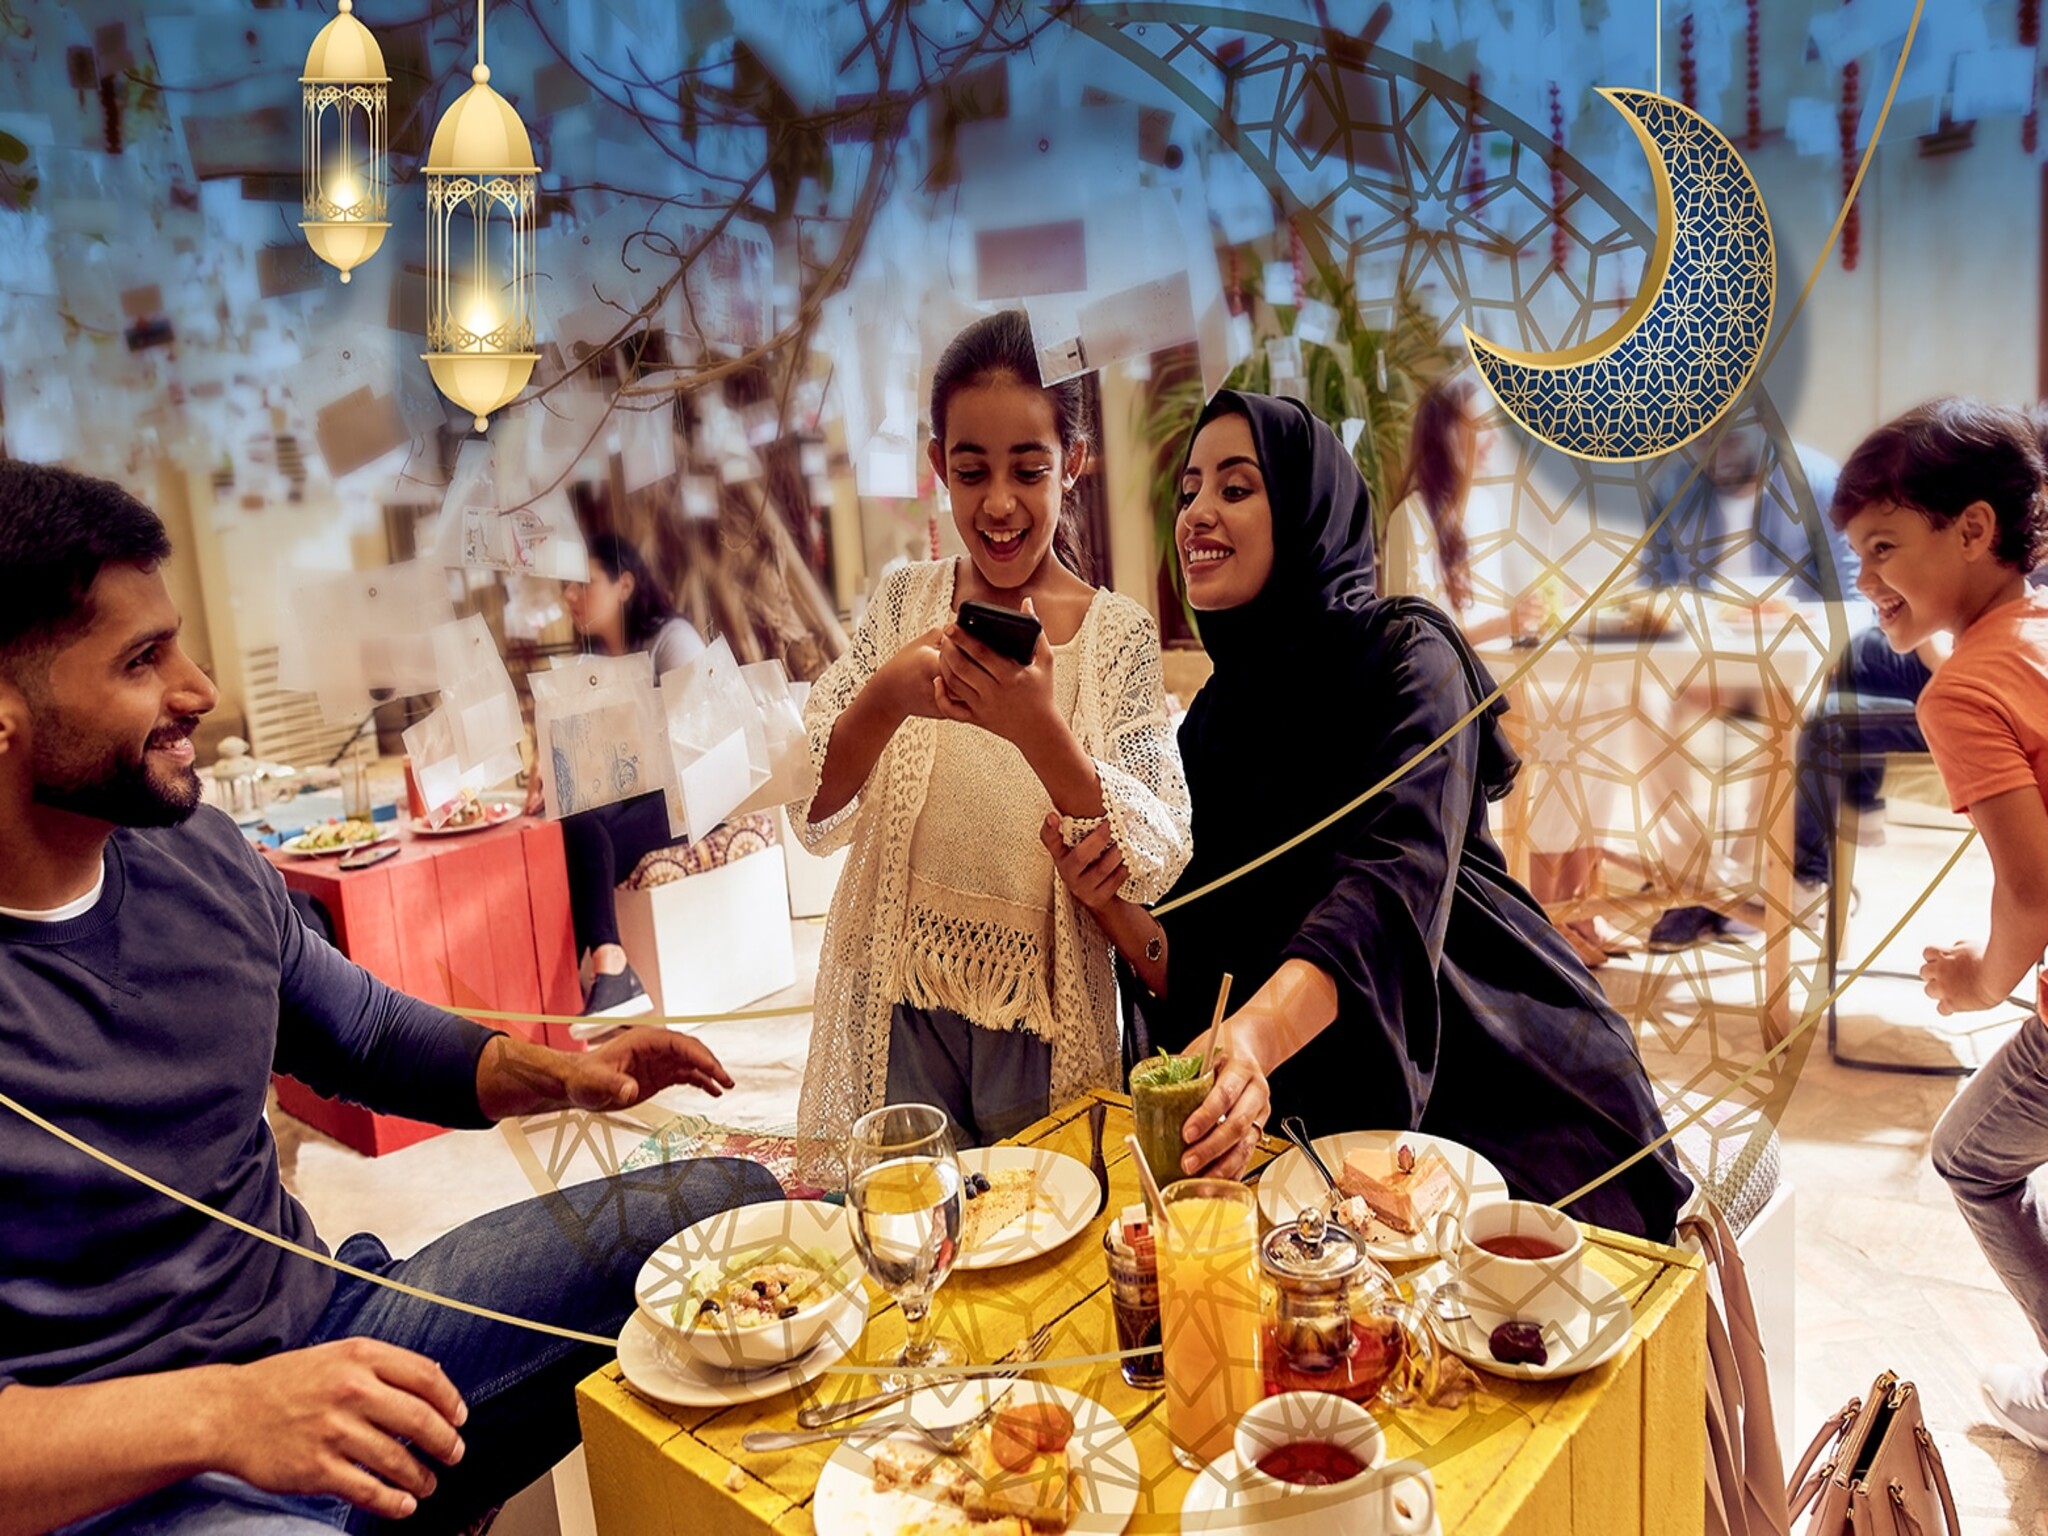 الفعاليات والعروض الرمضانية تعزز من الأداء الإيجابي للقطاع السياحي في الإمارات